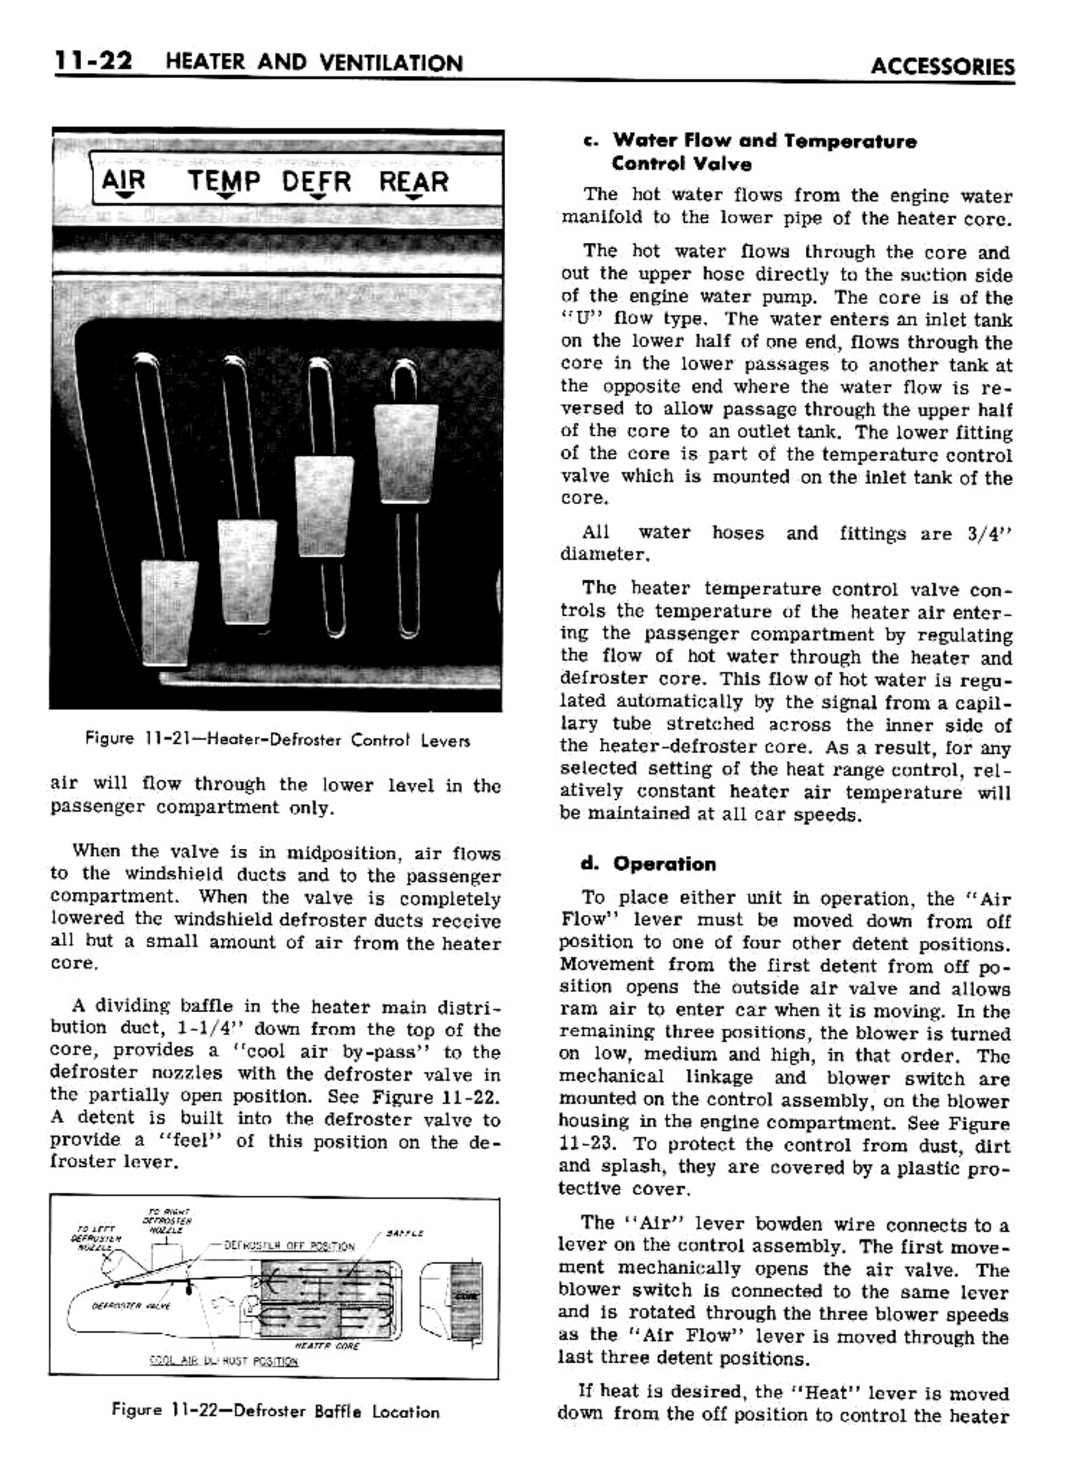 n_11 1961 Buick Shop Manual - Accessories-022-022.jpg